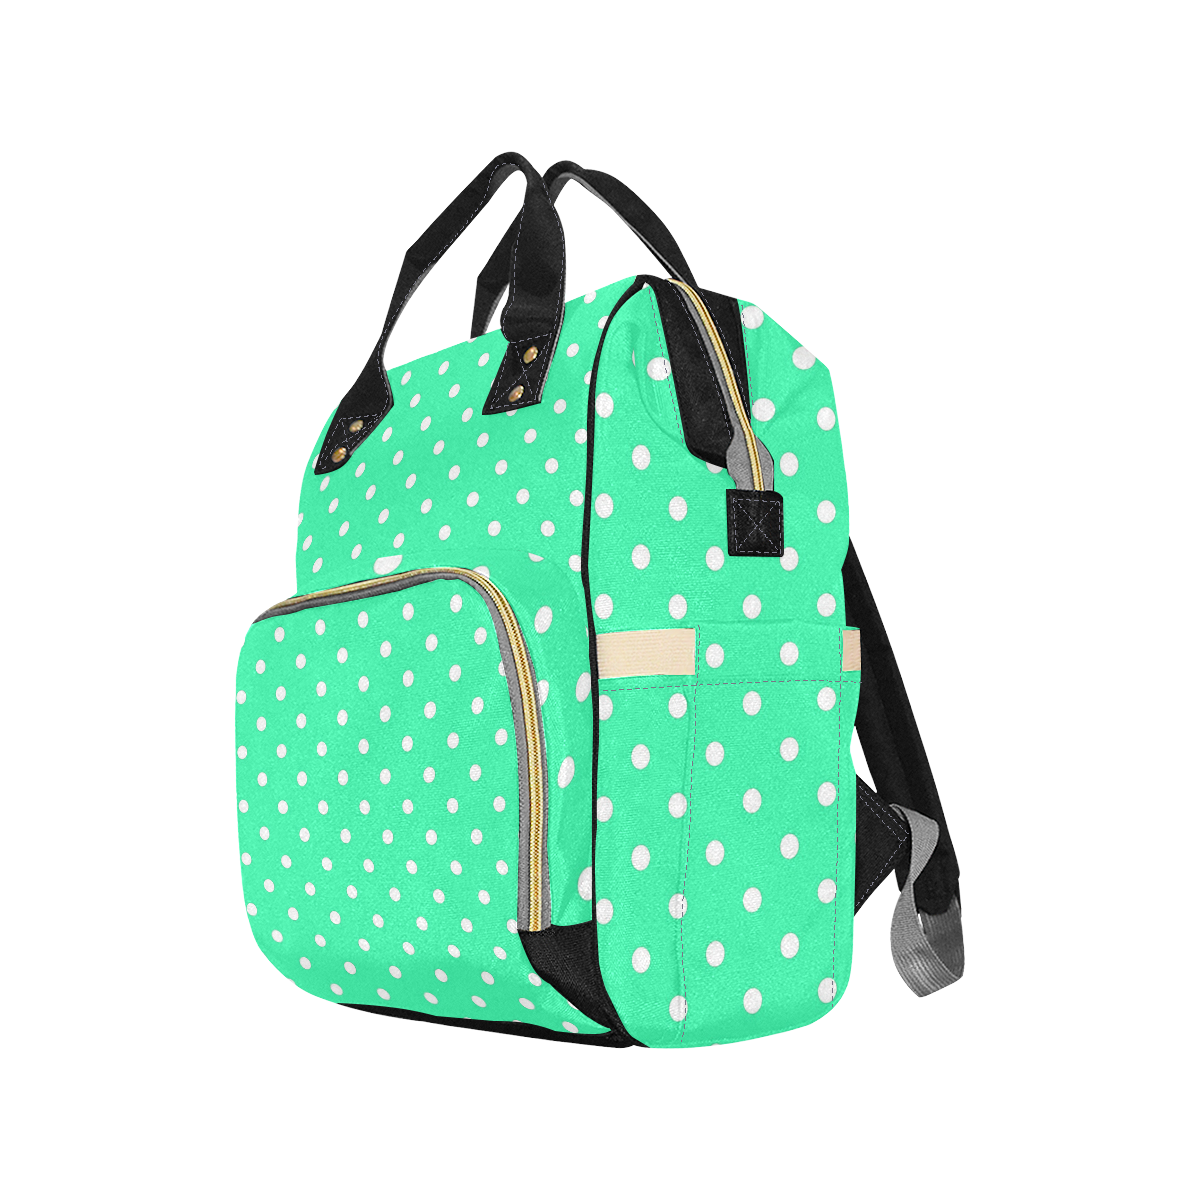 Mint Green White Dots Multi-Function Diaper Backpack/Diaper Bag (Model 1688)